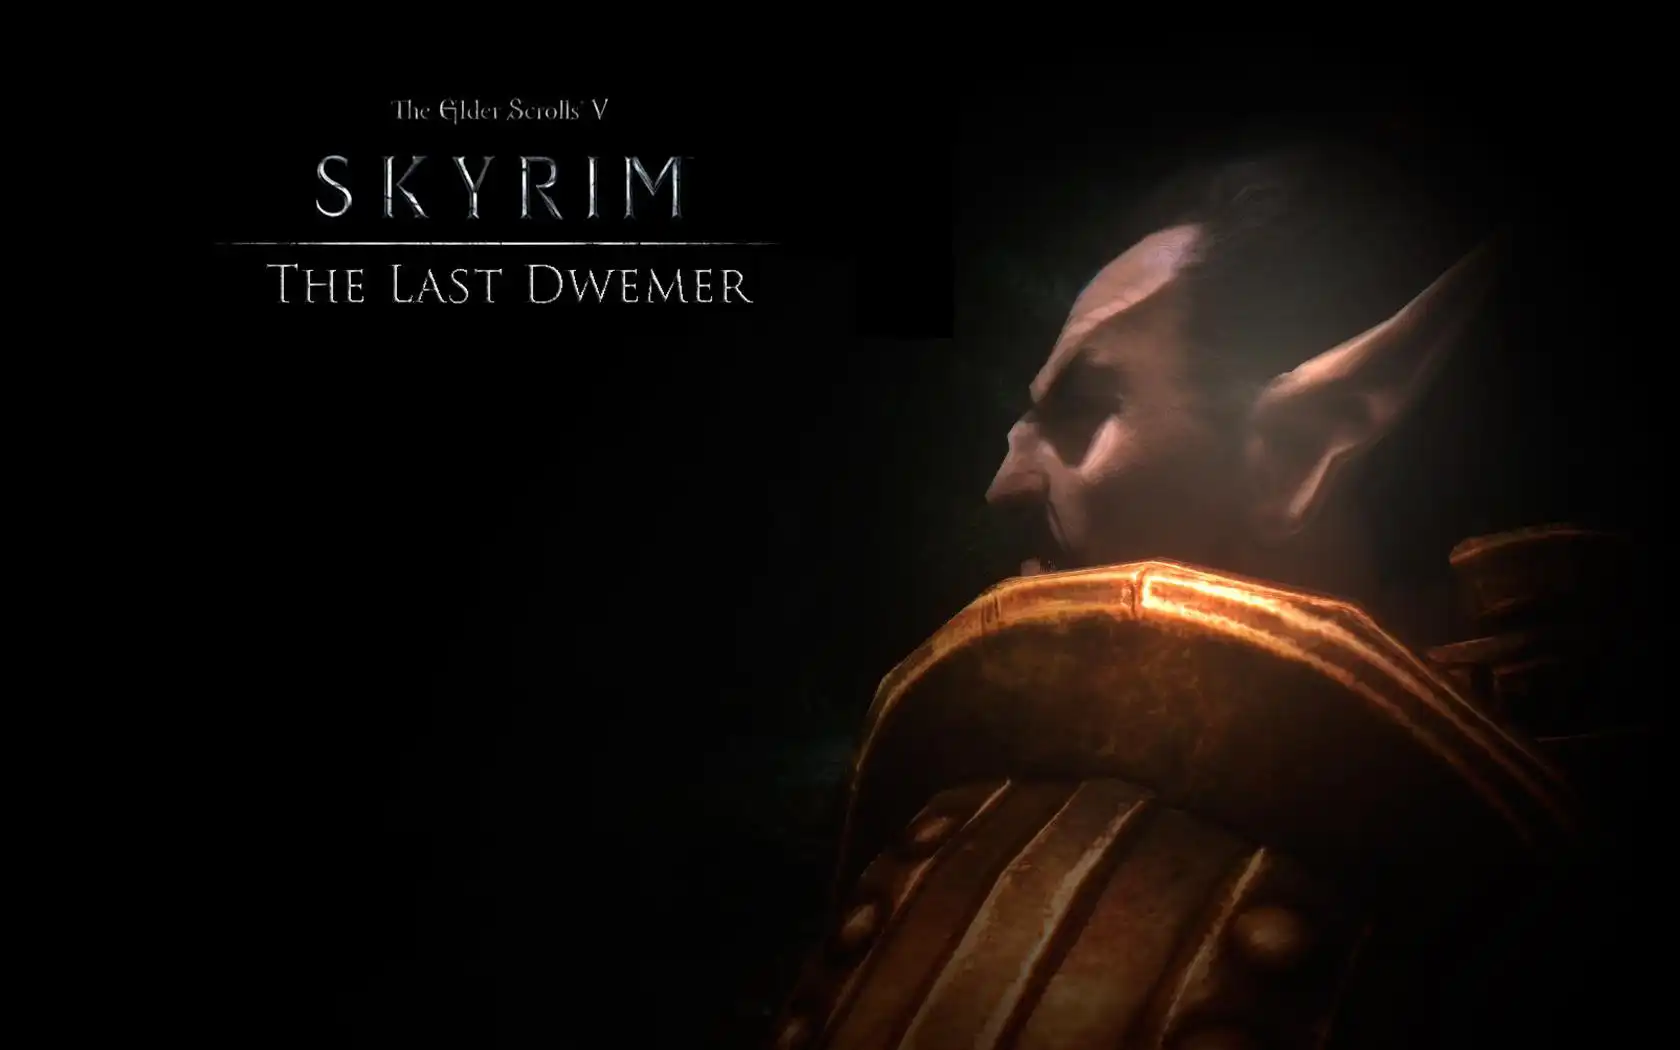 הורד כלי אינטרנט או אפליקציית אינטרנט The Elder Scrolls V: The Last Dwemer שיפעל בלינוקס באופן מקוון